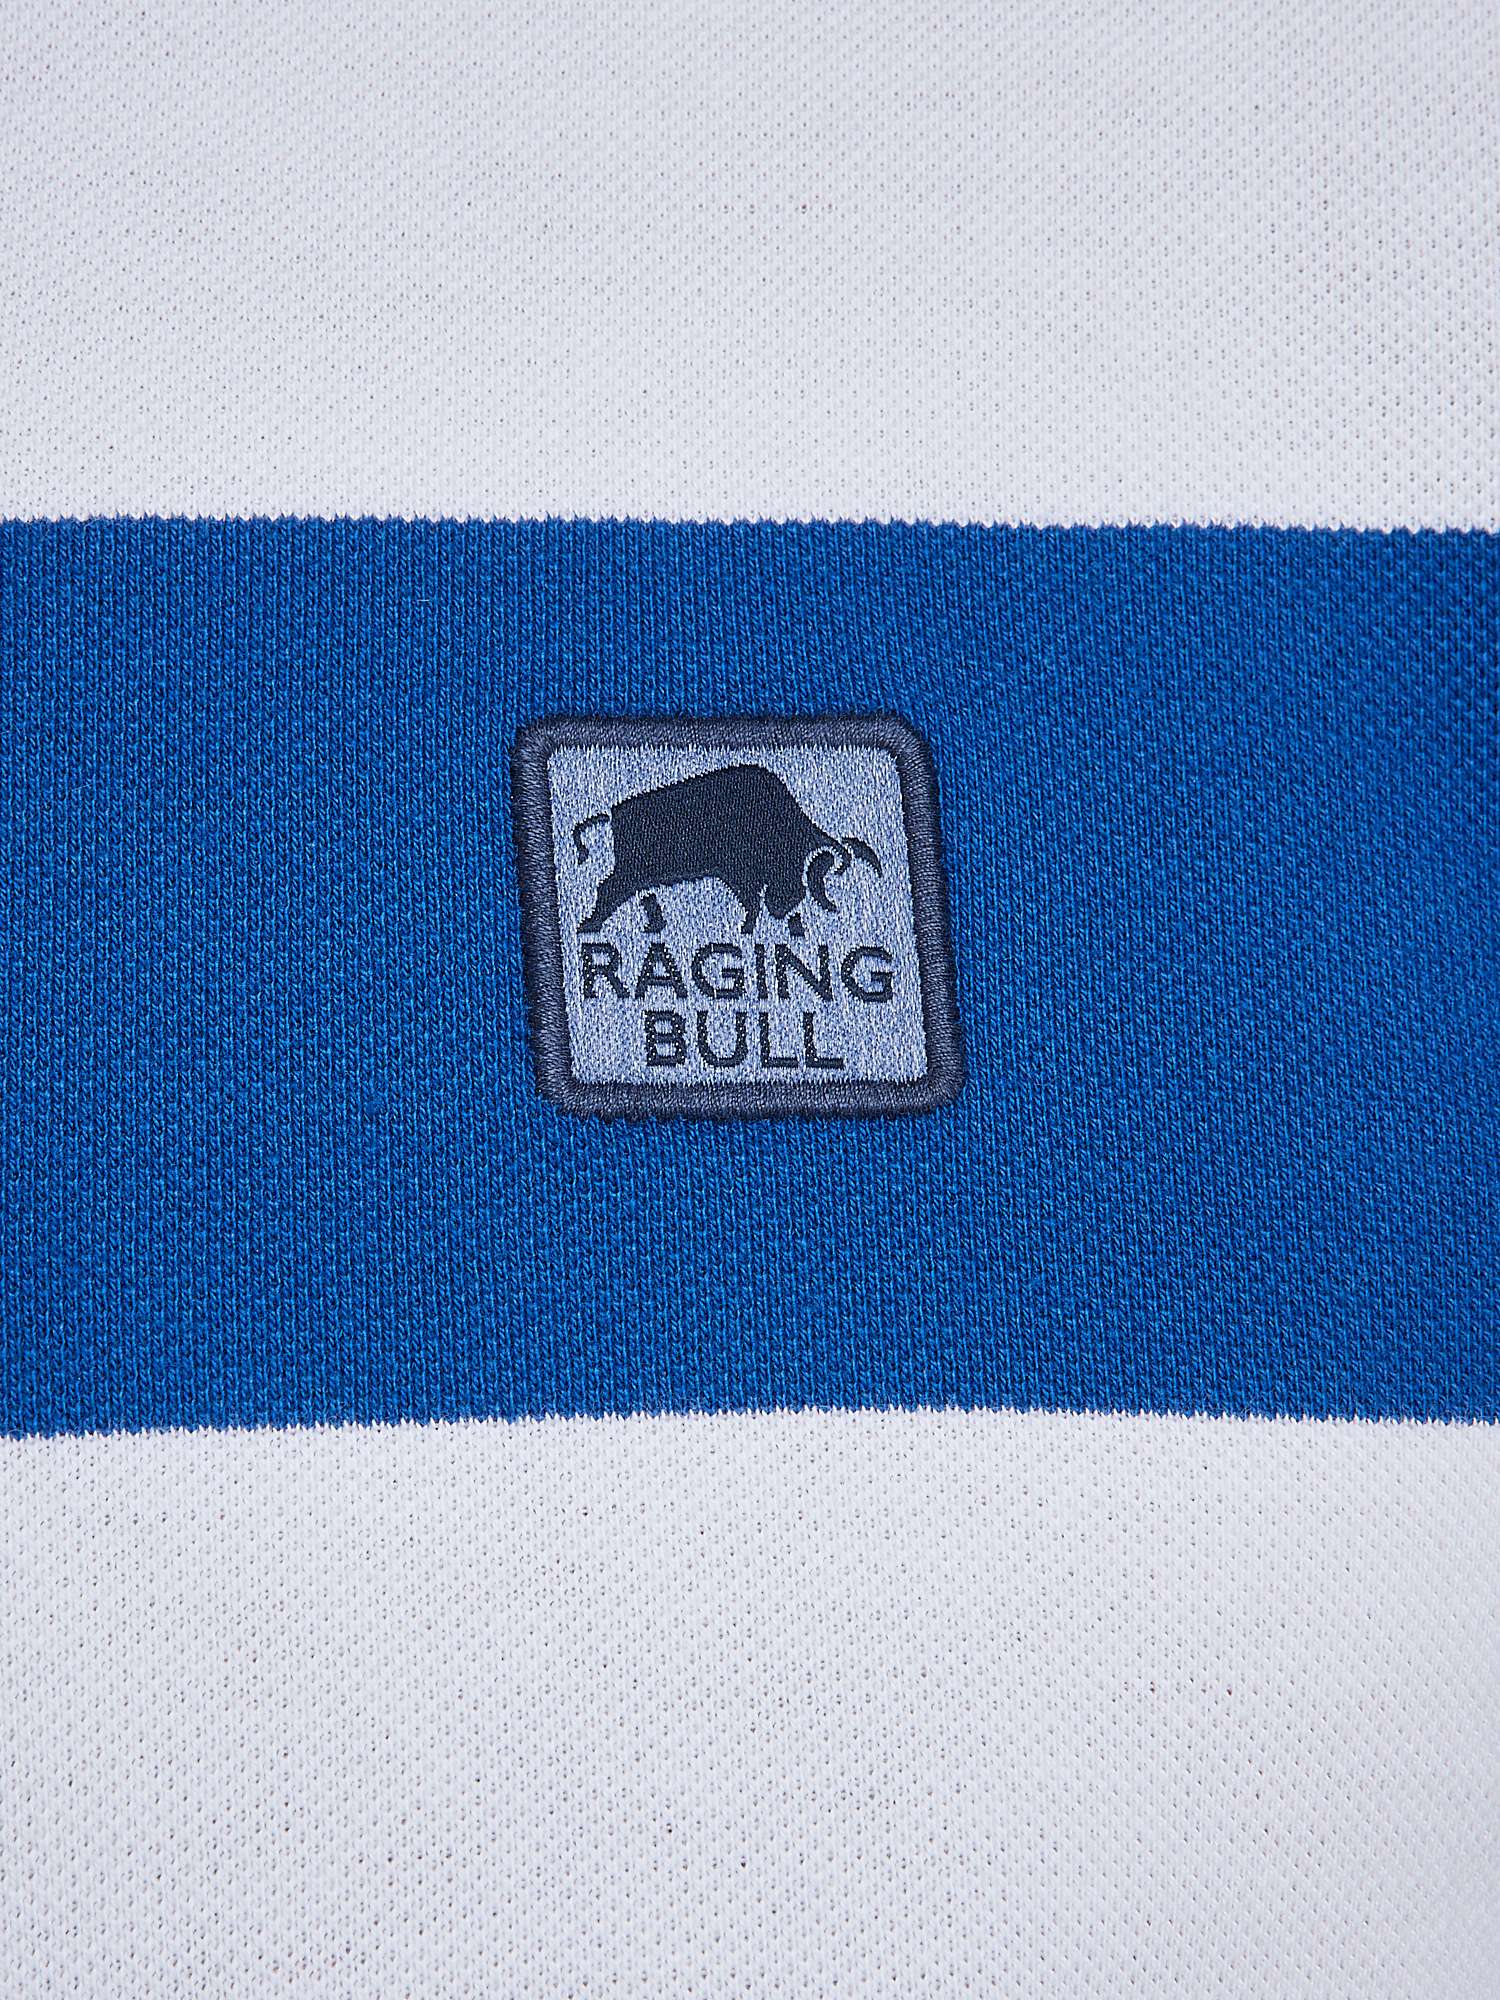 Buy Raging Bull Birdseye Stripe Polo Shirt, Cobalt Blue/Multi Online at johnlewis.com